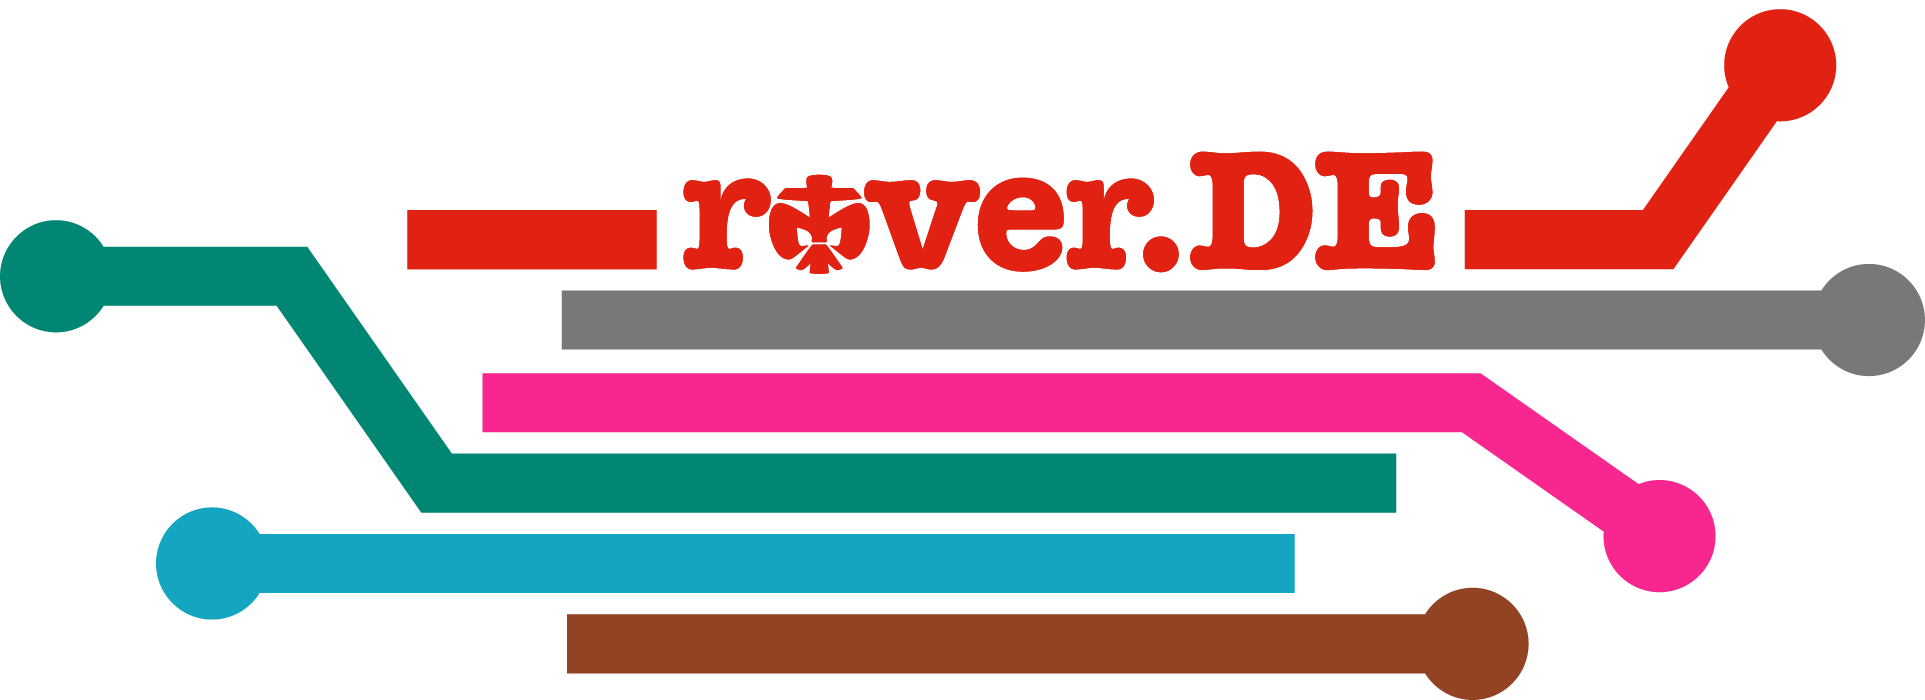 Logo Rover.DE